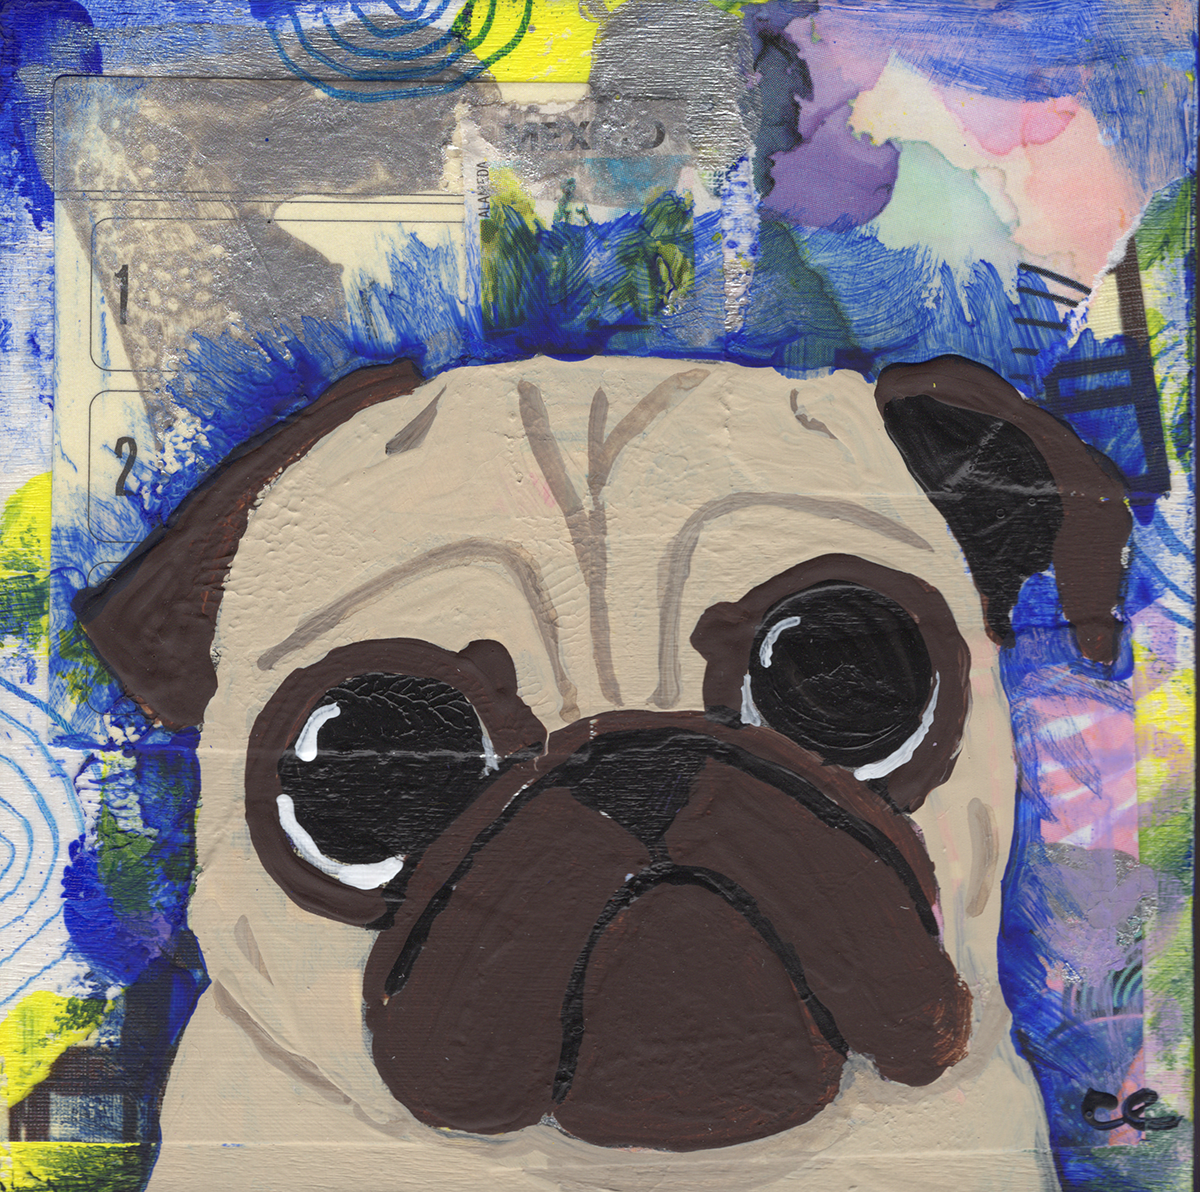 Little Blue Pug - Art Treats #180